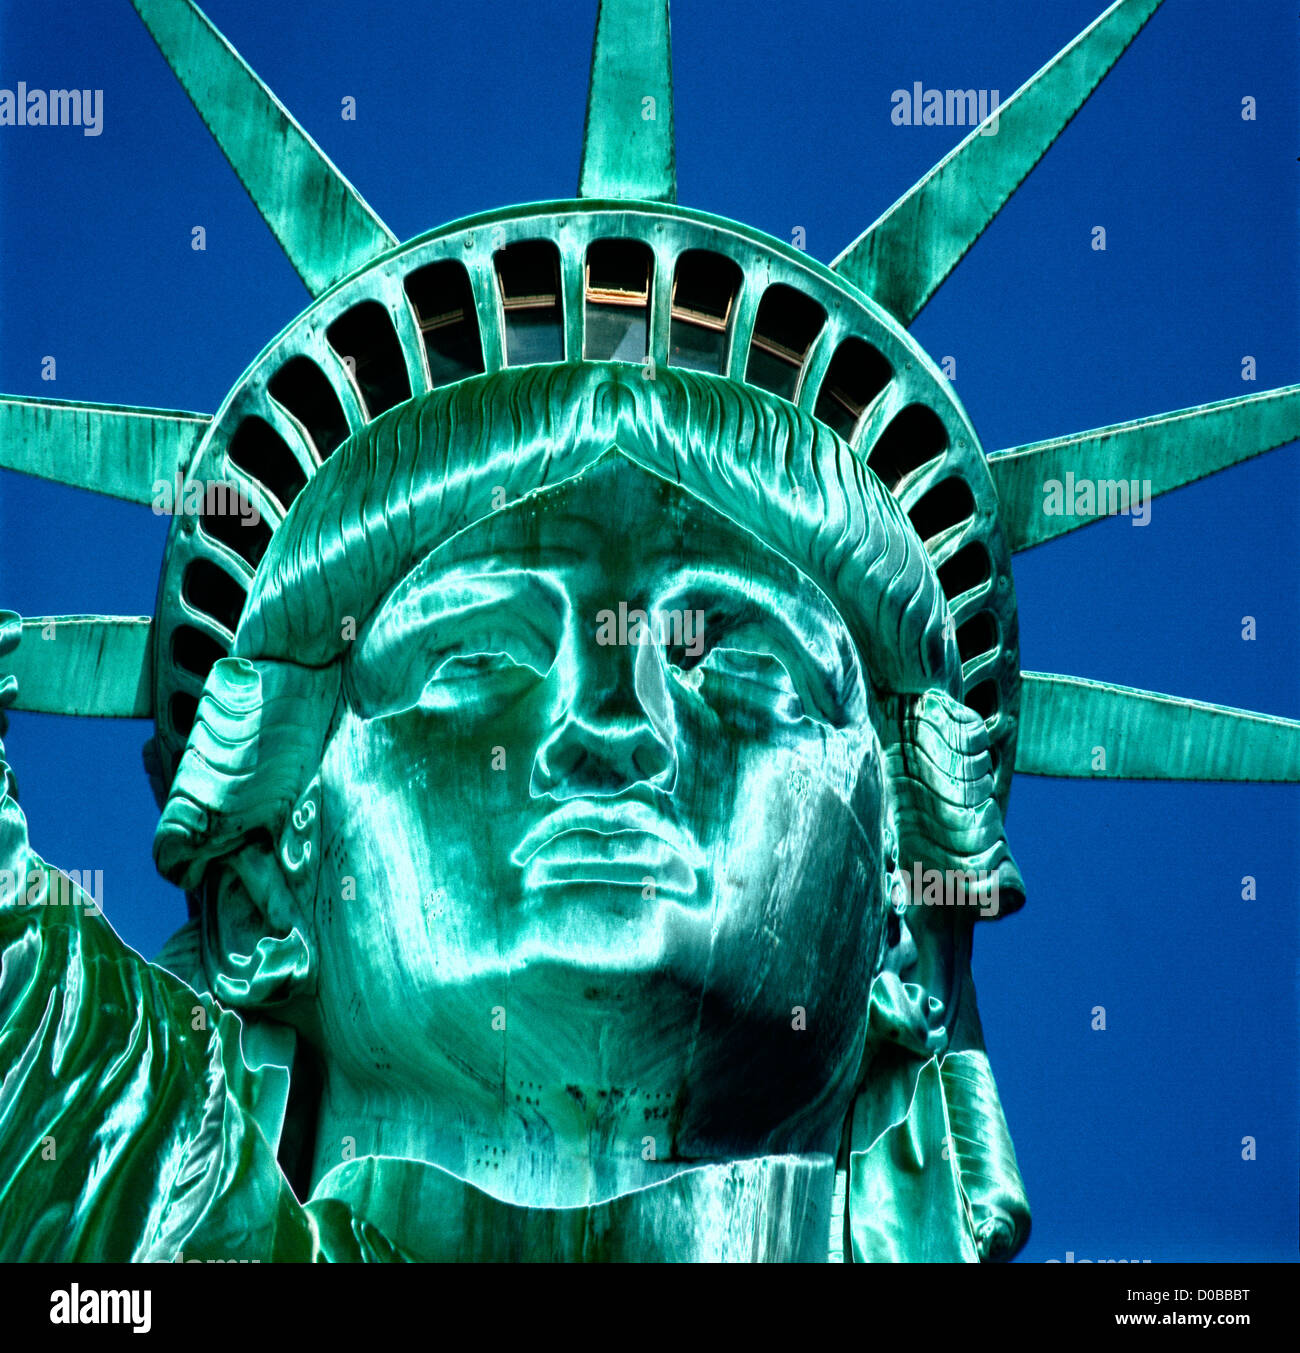 Representación abstracta de la Estatua de la libertad, concepto de EE.UU. Foto de stock